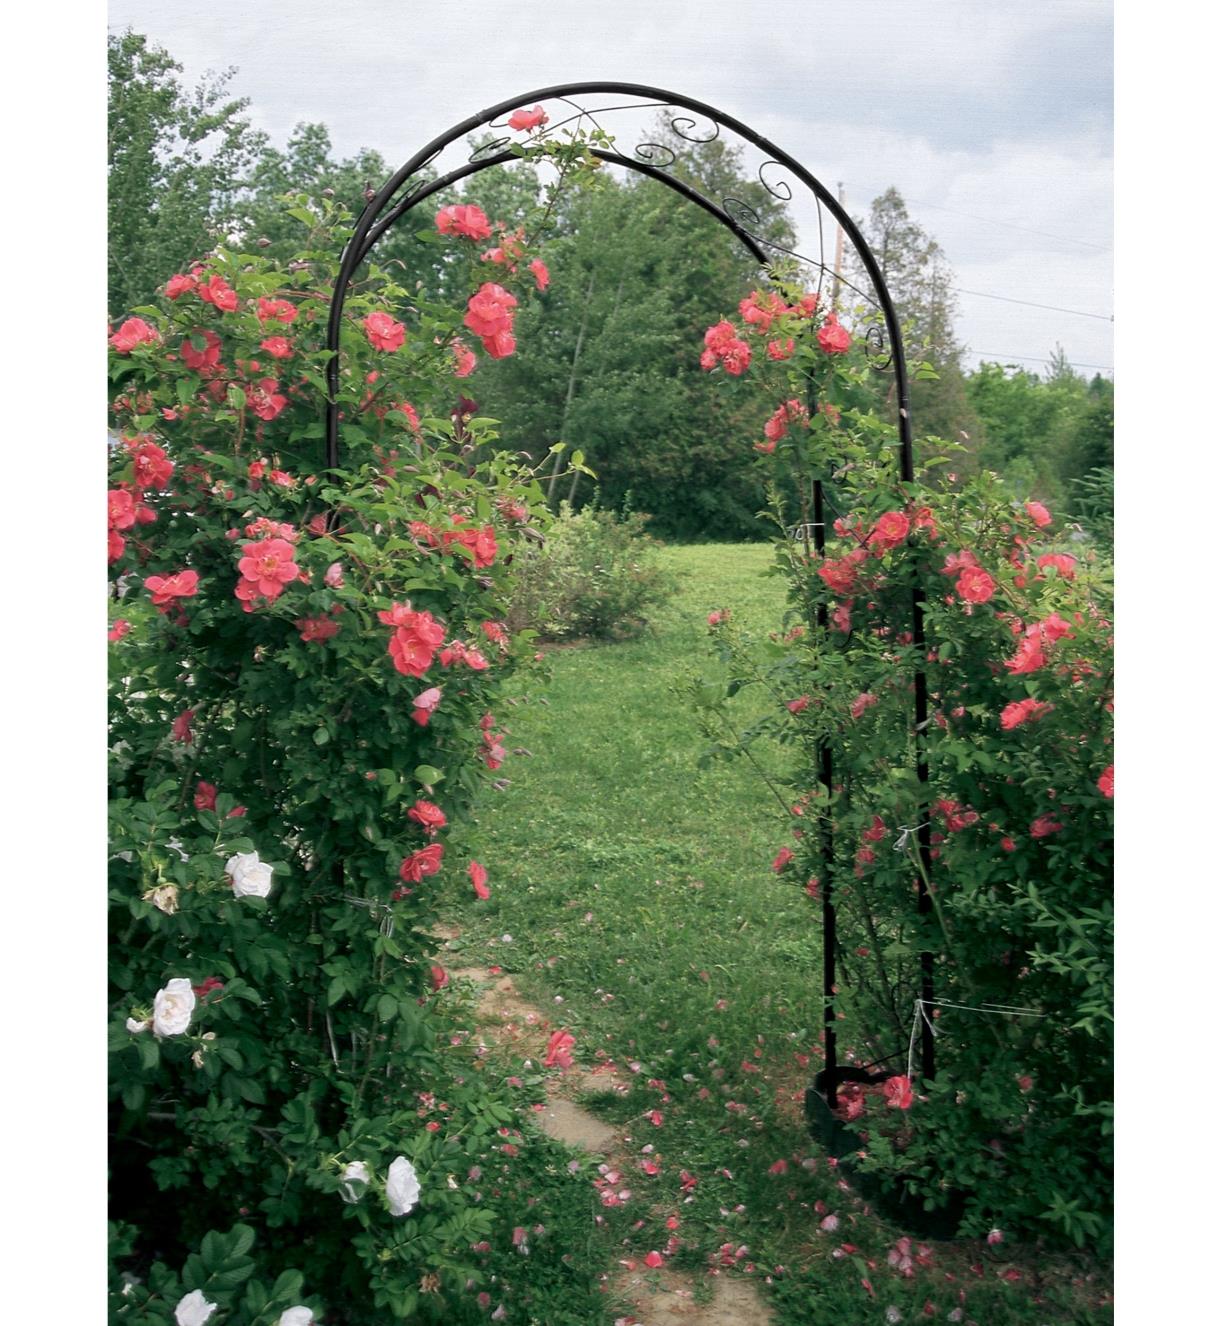 Garden Arch supporting climbing roses in a garden